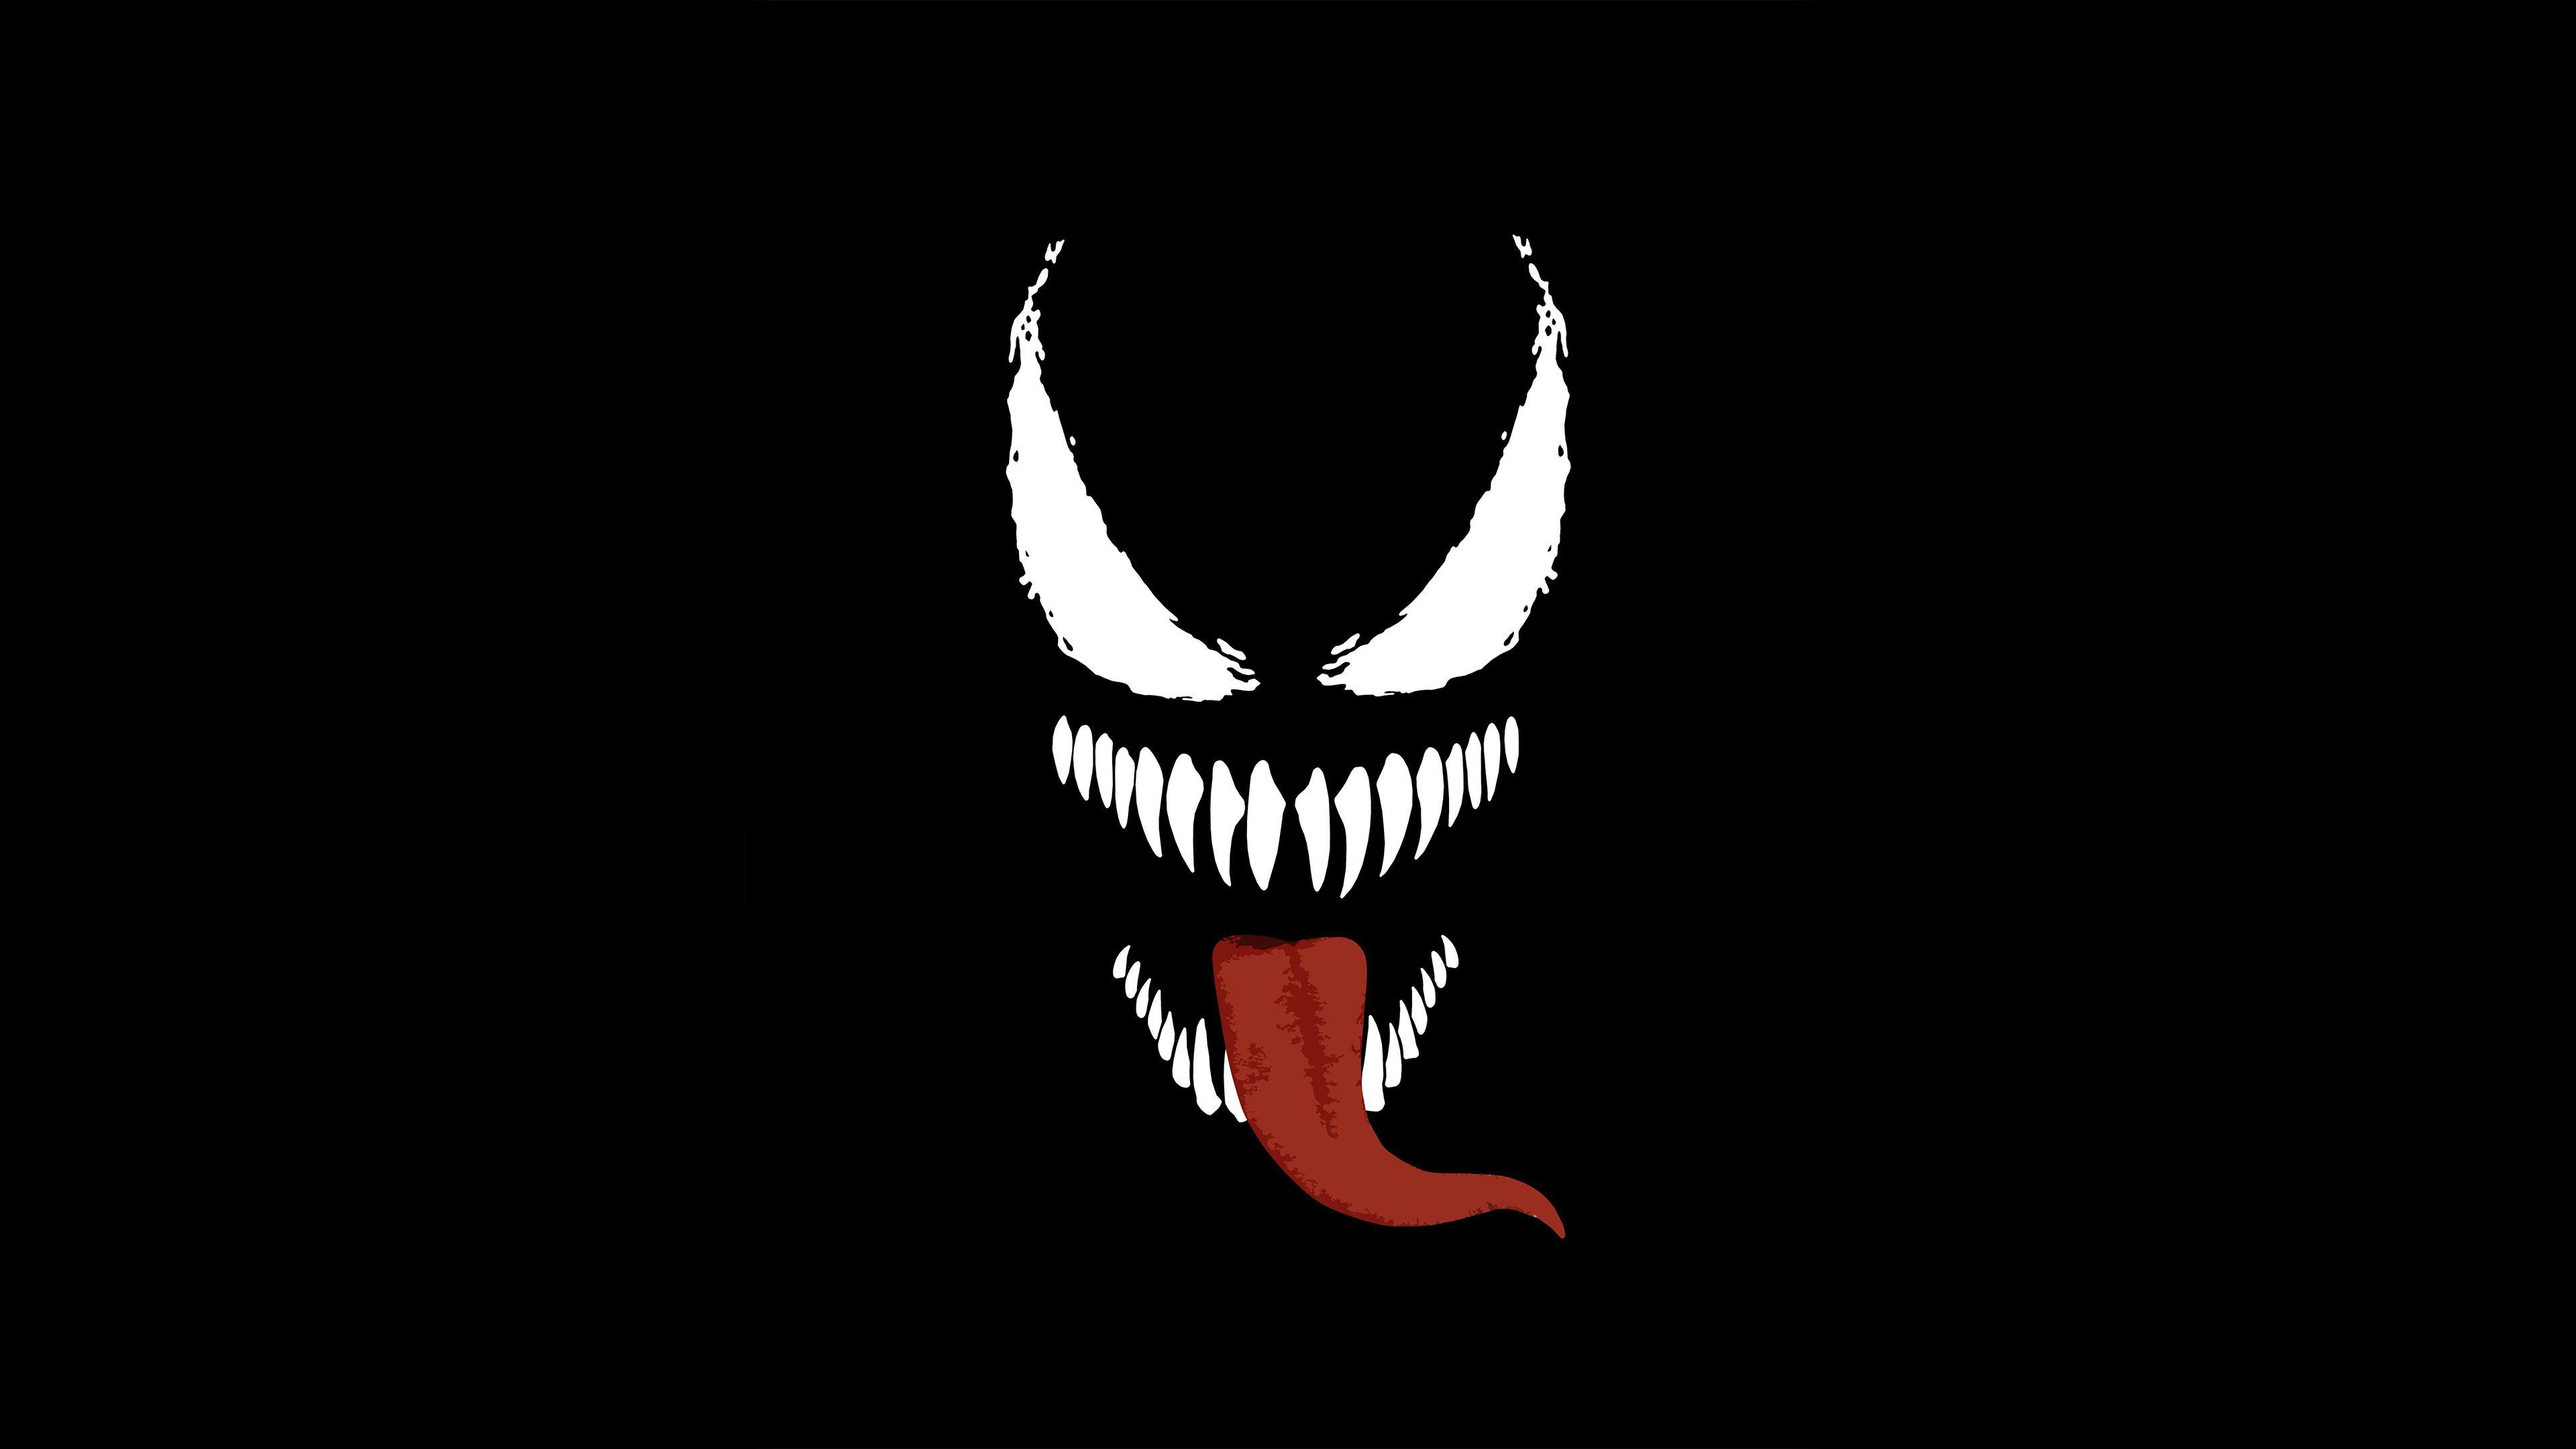 Venom 4k Arts Venom wallpaper, supervillain wallpaper